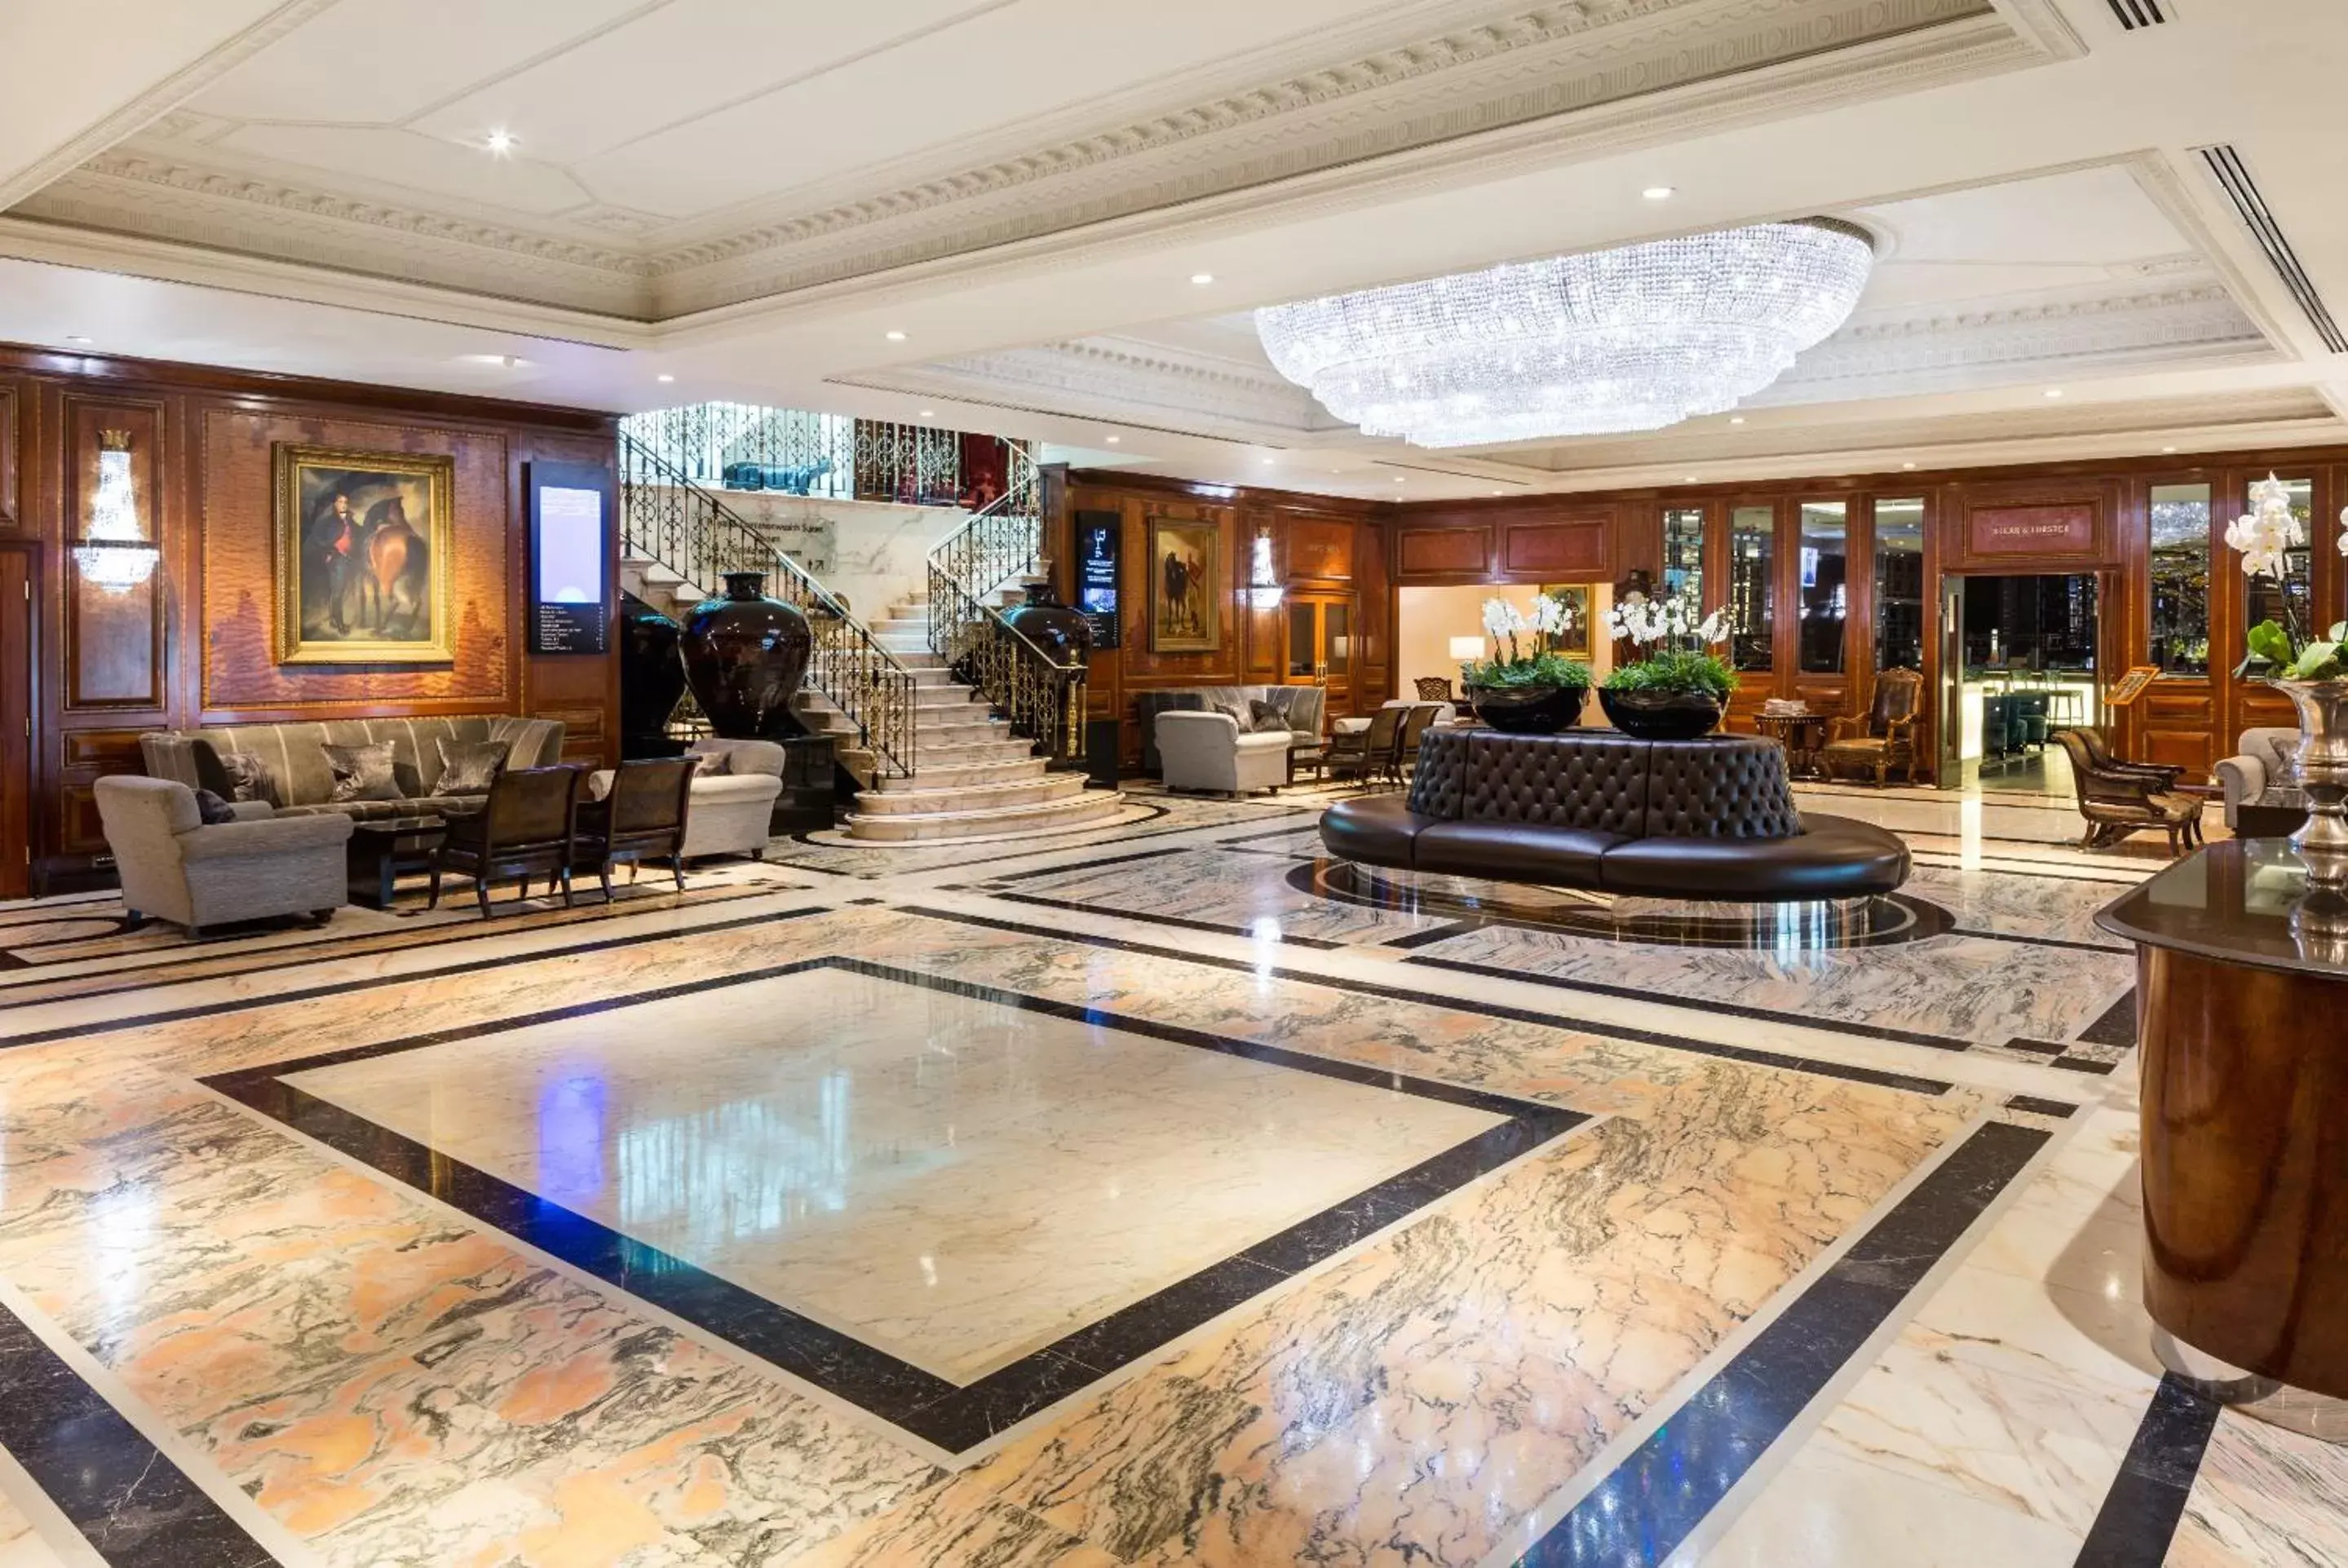 Lobby or reception in Radisson Blu Edwardian Heathrow Hotel, London